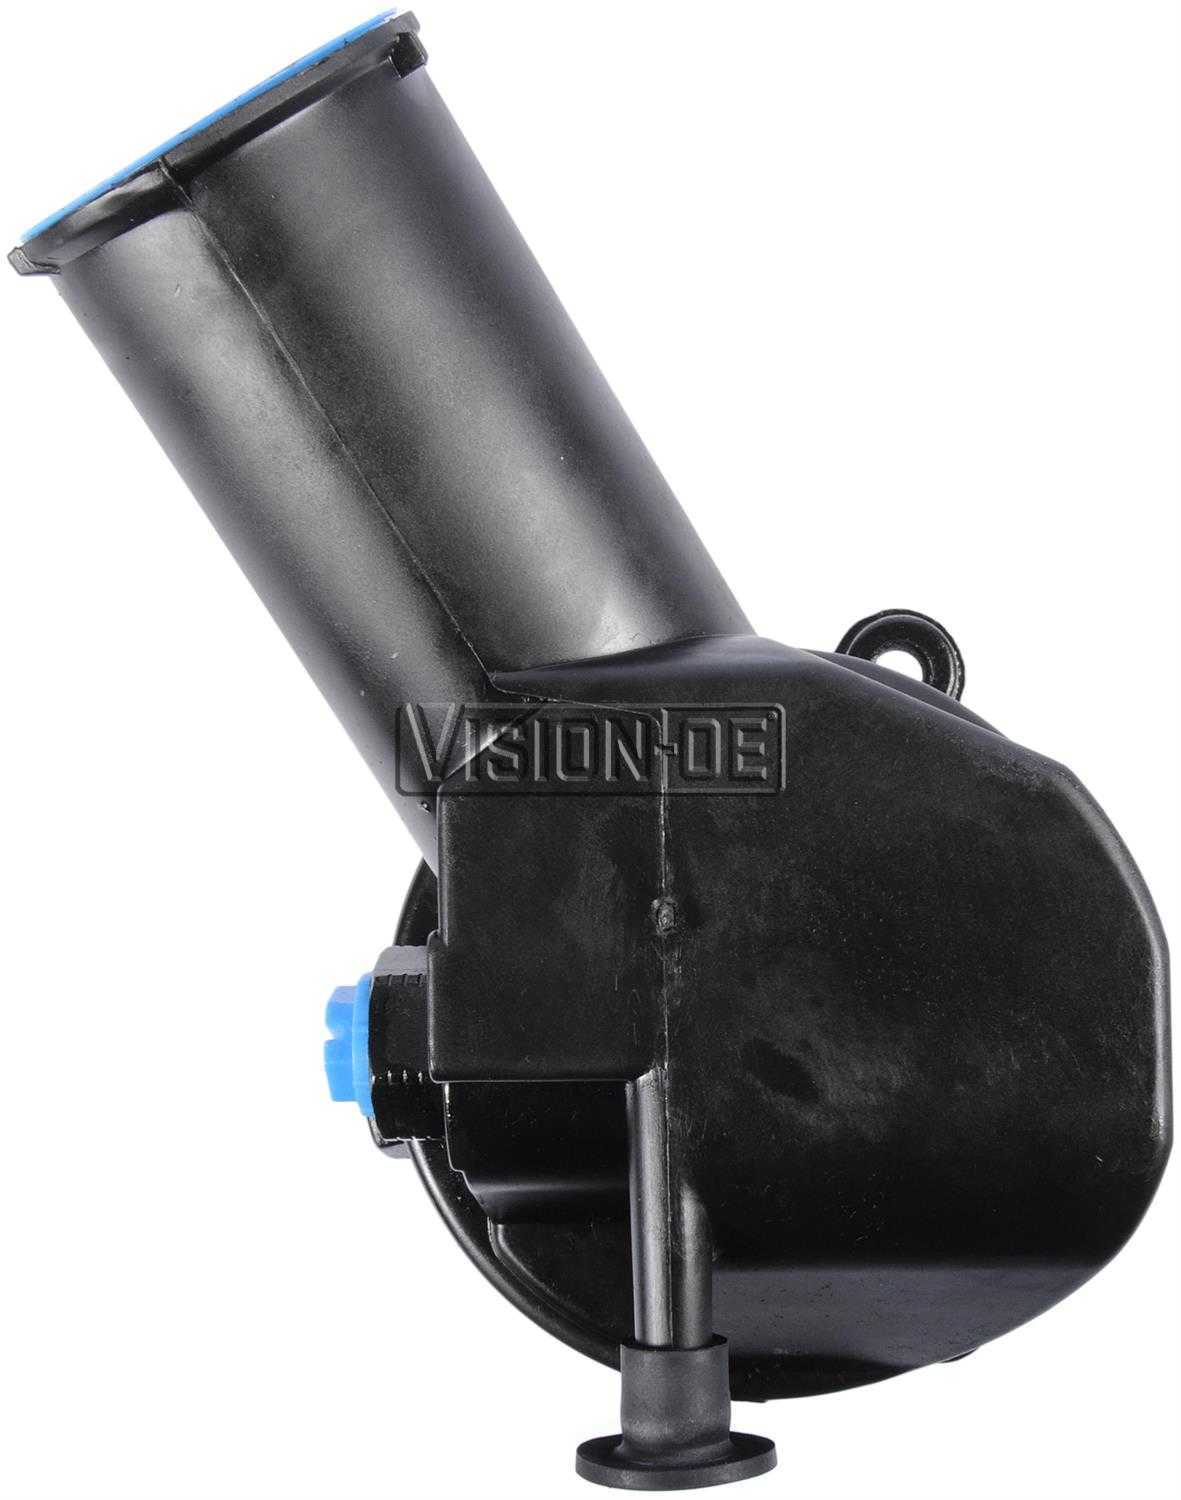 VISION-OE - Reman Power Steering Pump - VOE 711-2137